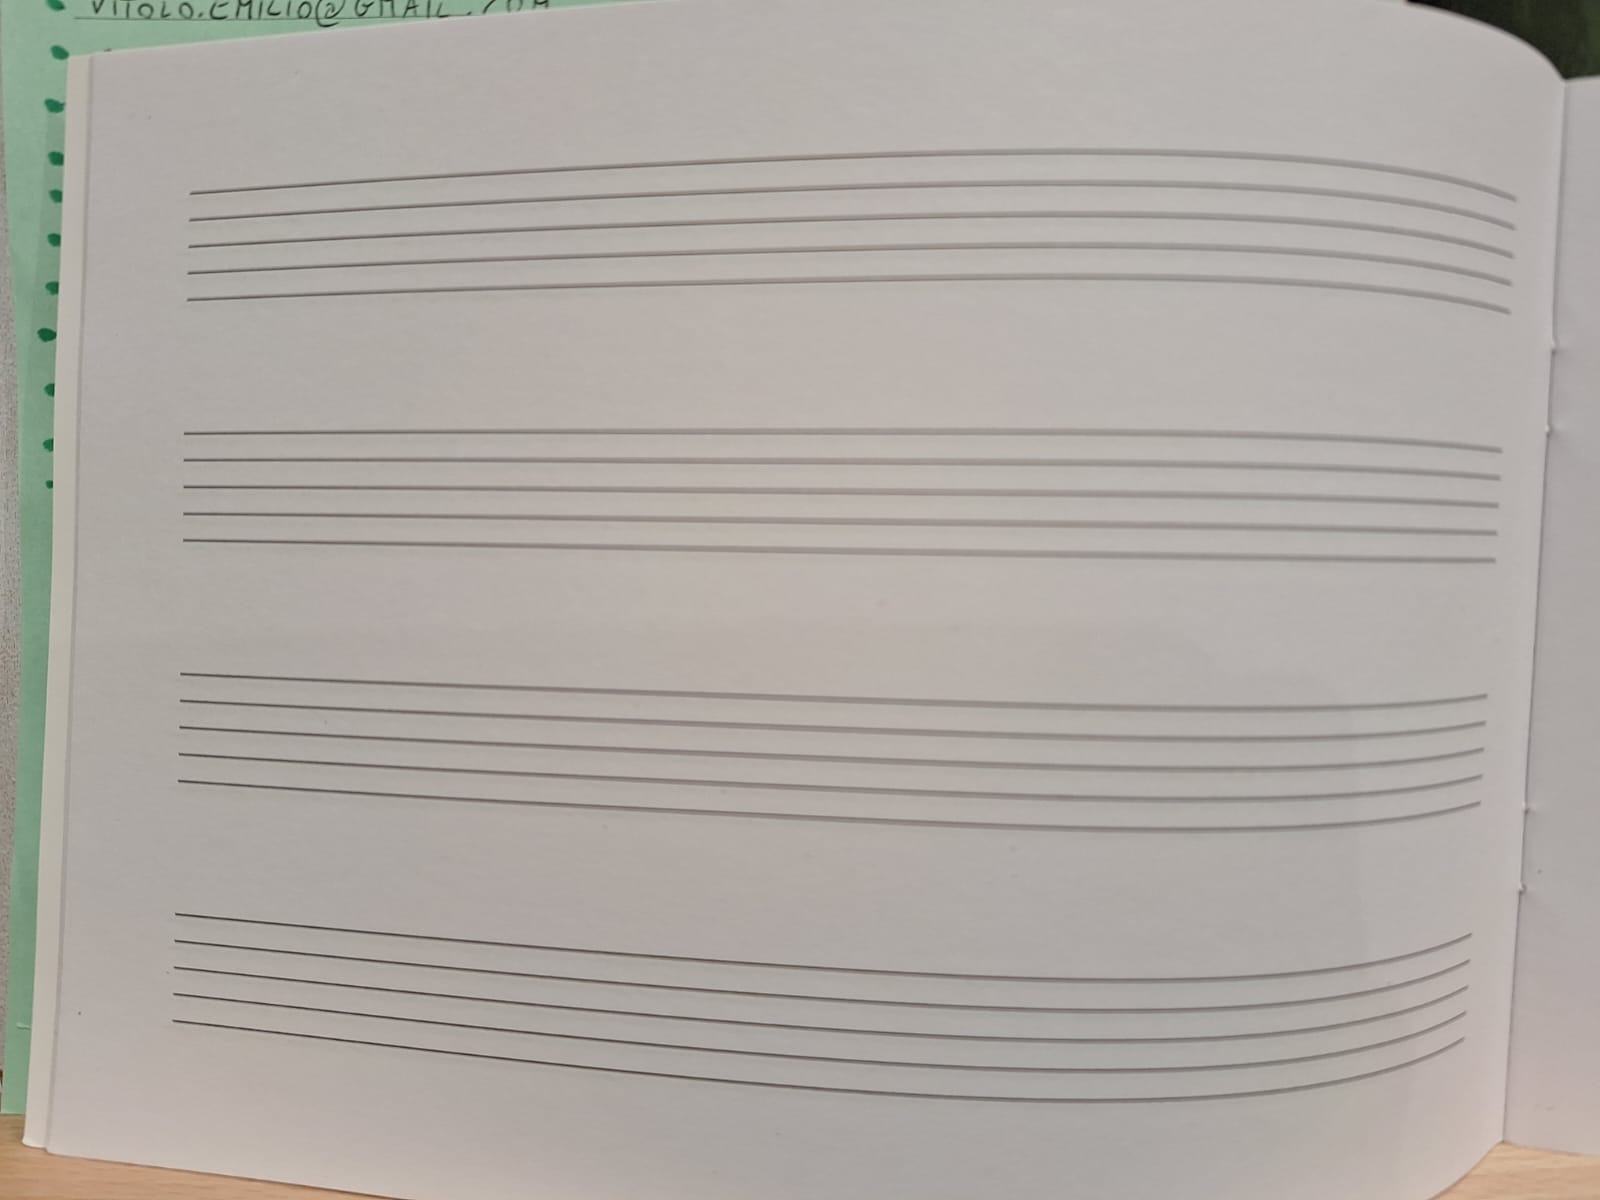 Quaderno pentagrammato rigo largo, formato 17x24, per bambini - La Stanza  della Musica